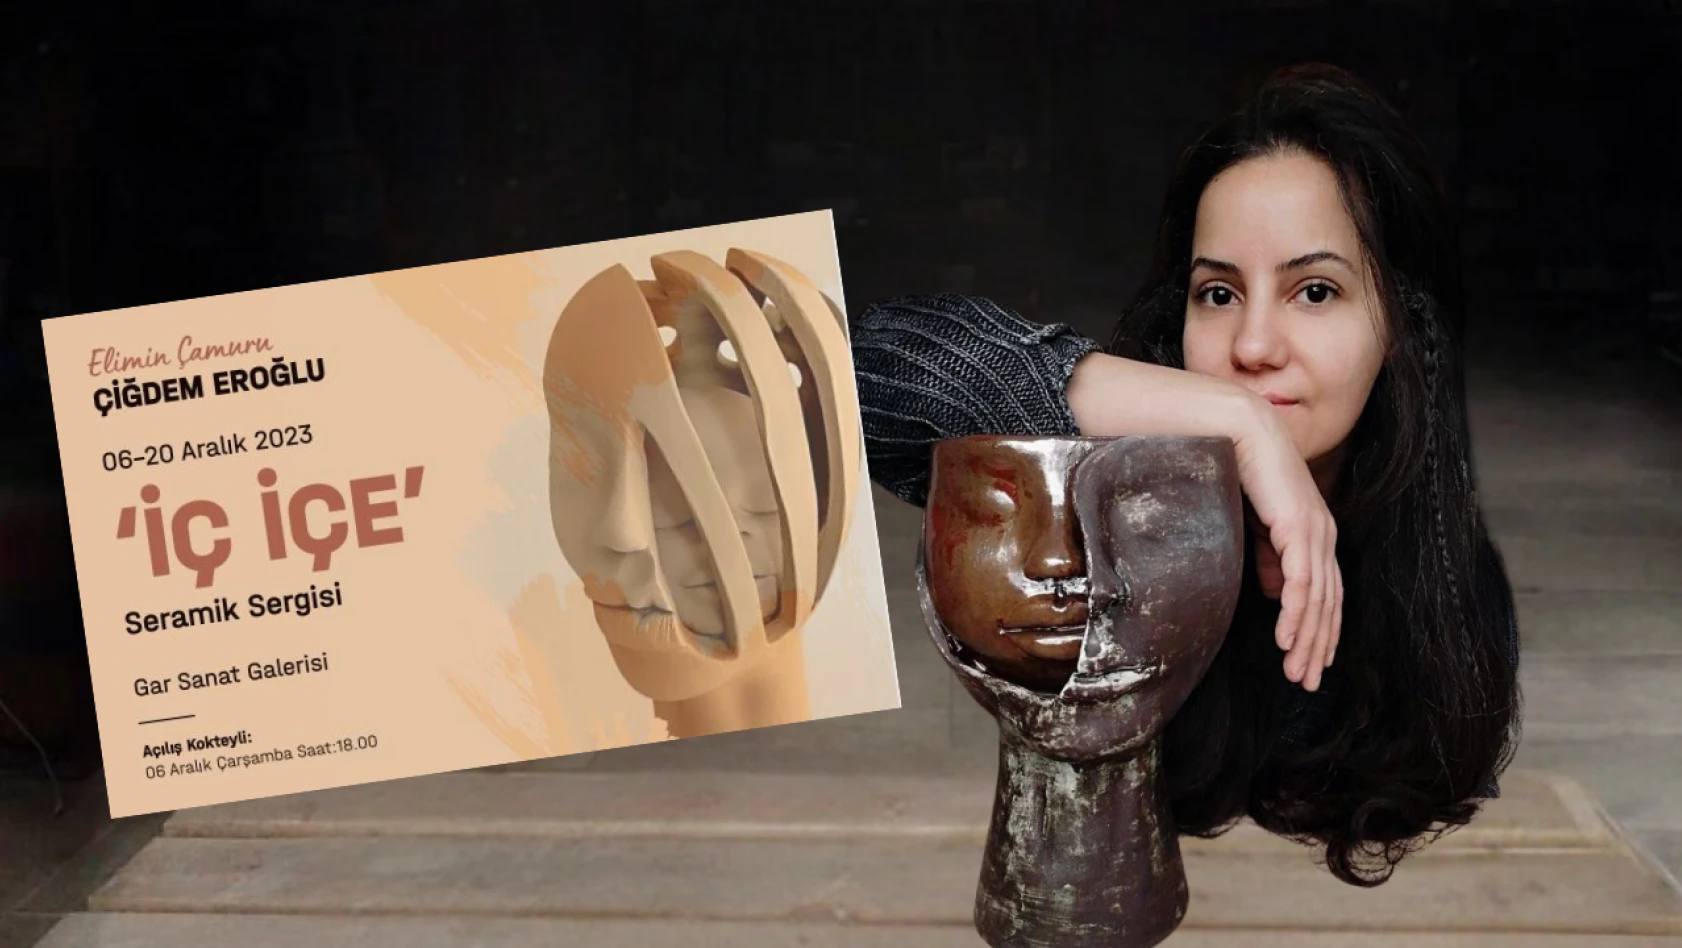 Çiğdem Eroğlu'nun kişisel seramik sergisi 'İç içe' İzmit Tren Garı'nda açılıyor